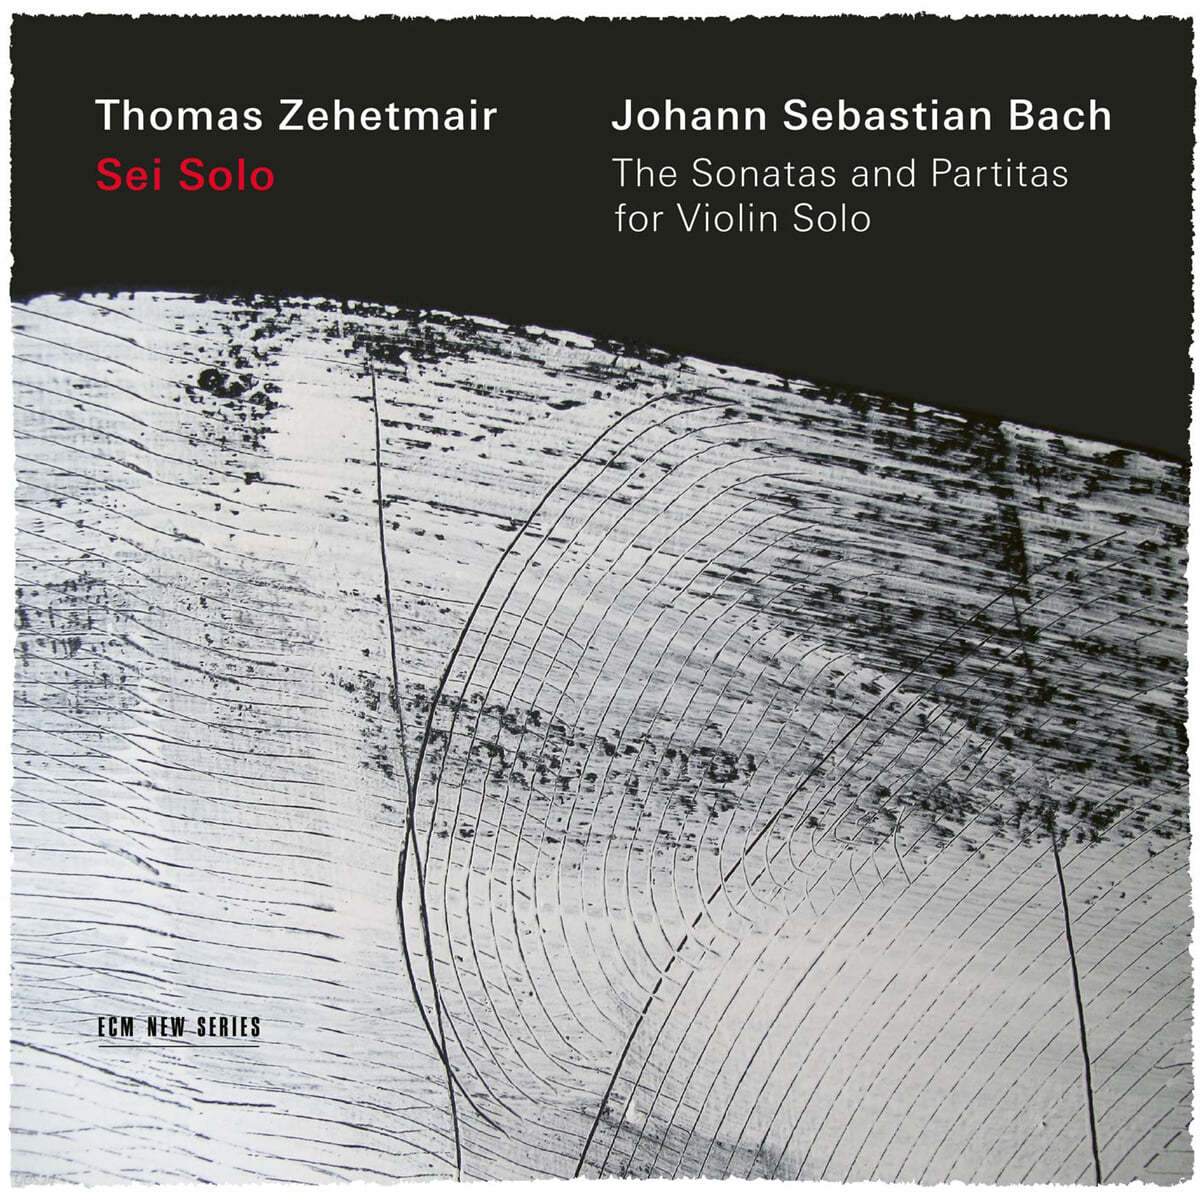 Thomas Zehetmair 바흐: 무반주 바이올린 소나타, 파르티타 전곡 - 토마스 체헤트마이어 (J.S.Bach: The Sonatas and Partitas for Violin Solo BWV 1001-1006) 